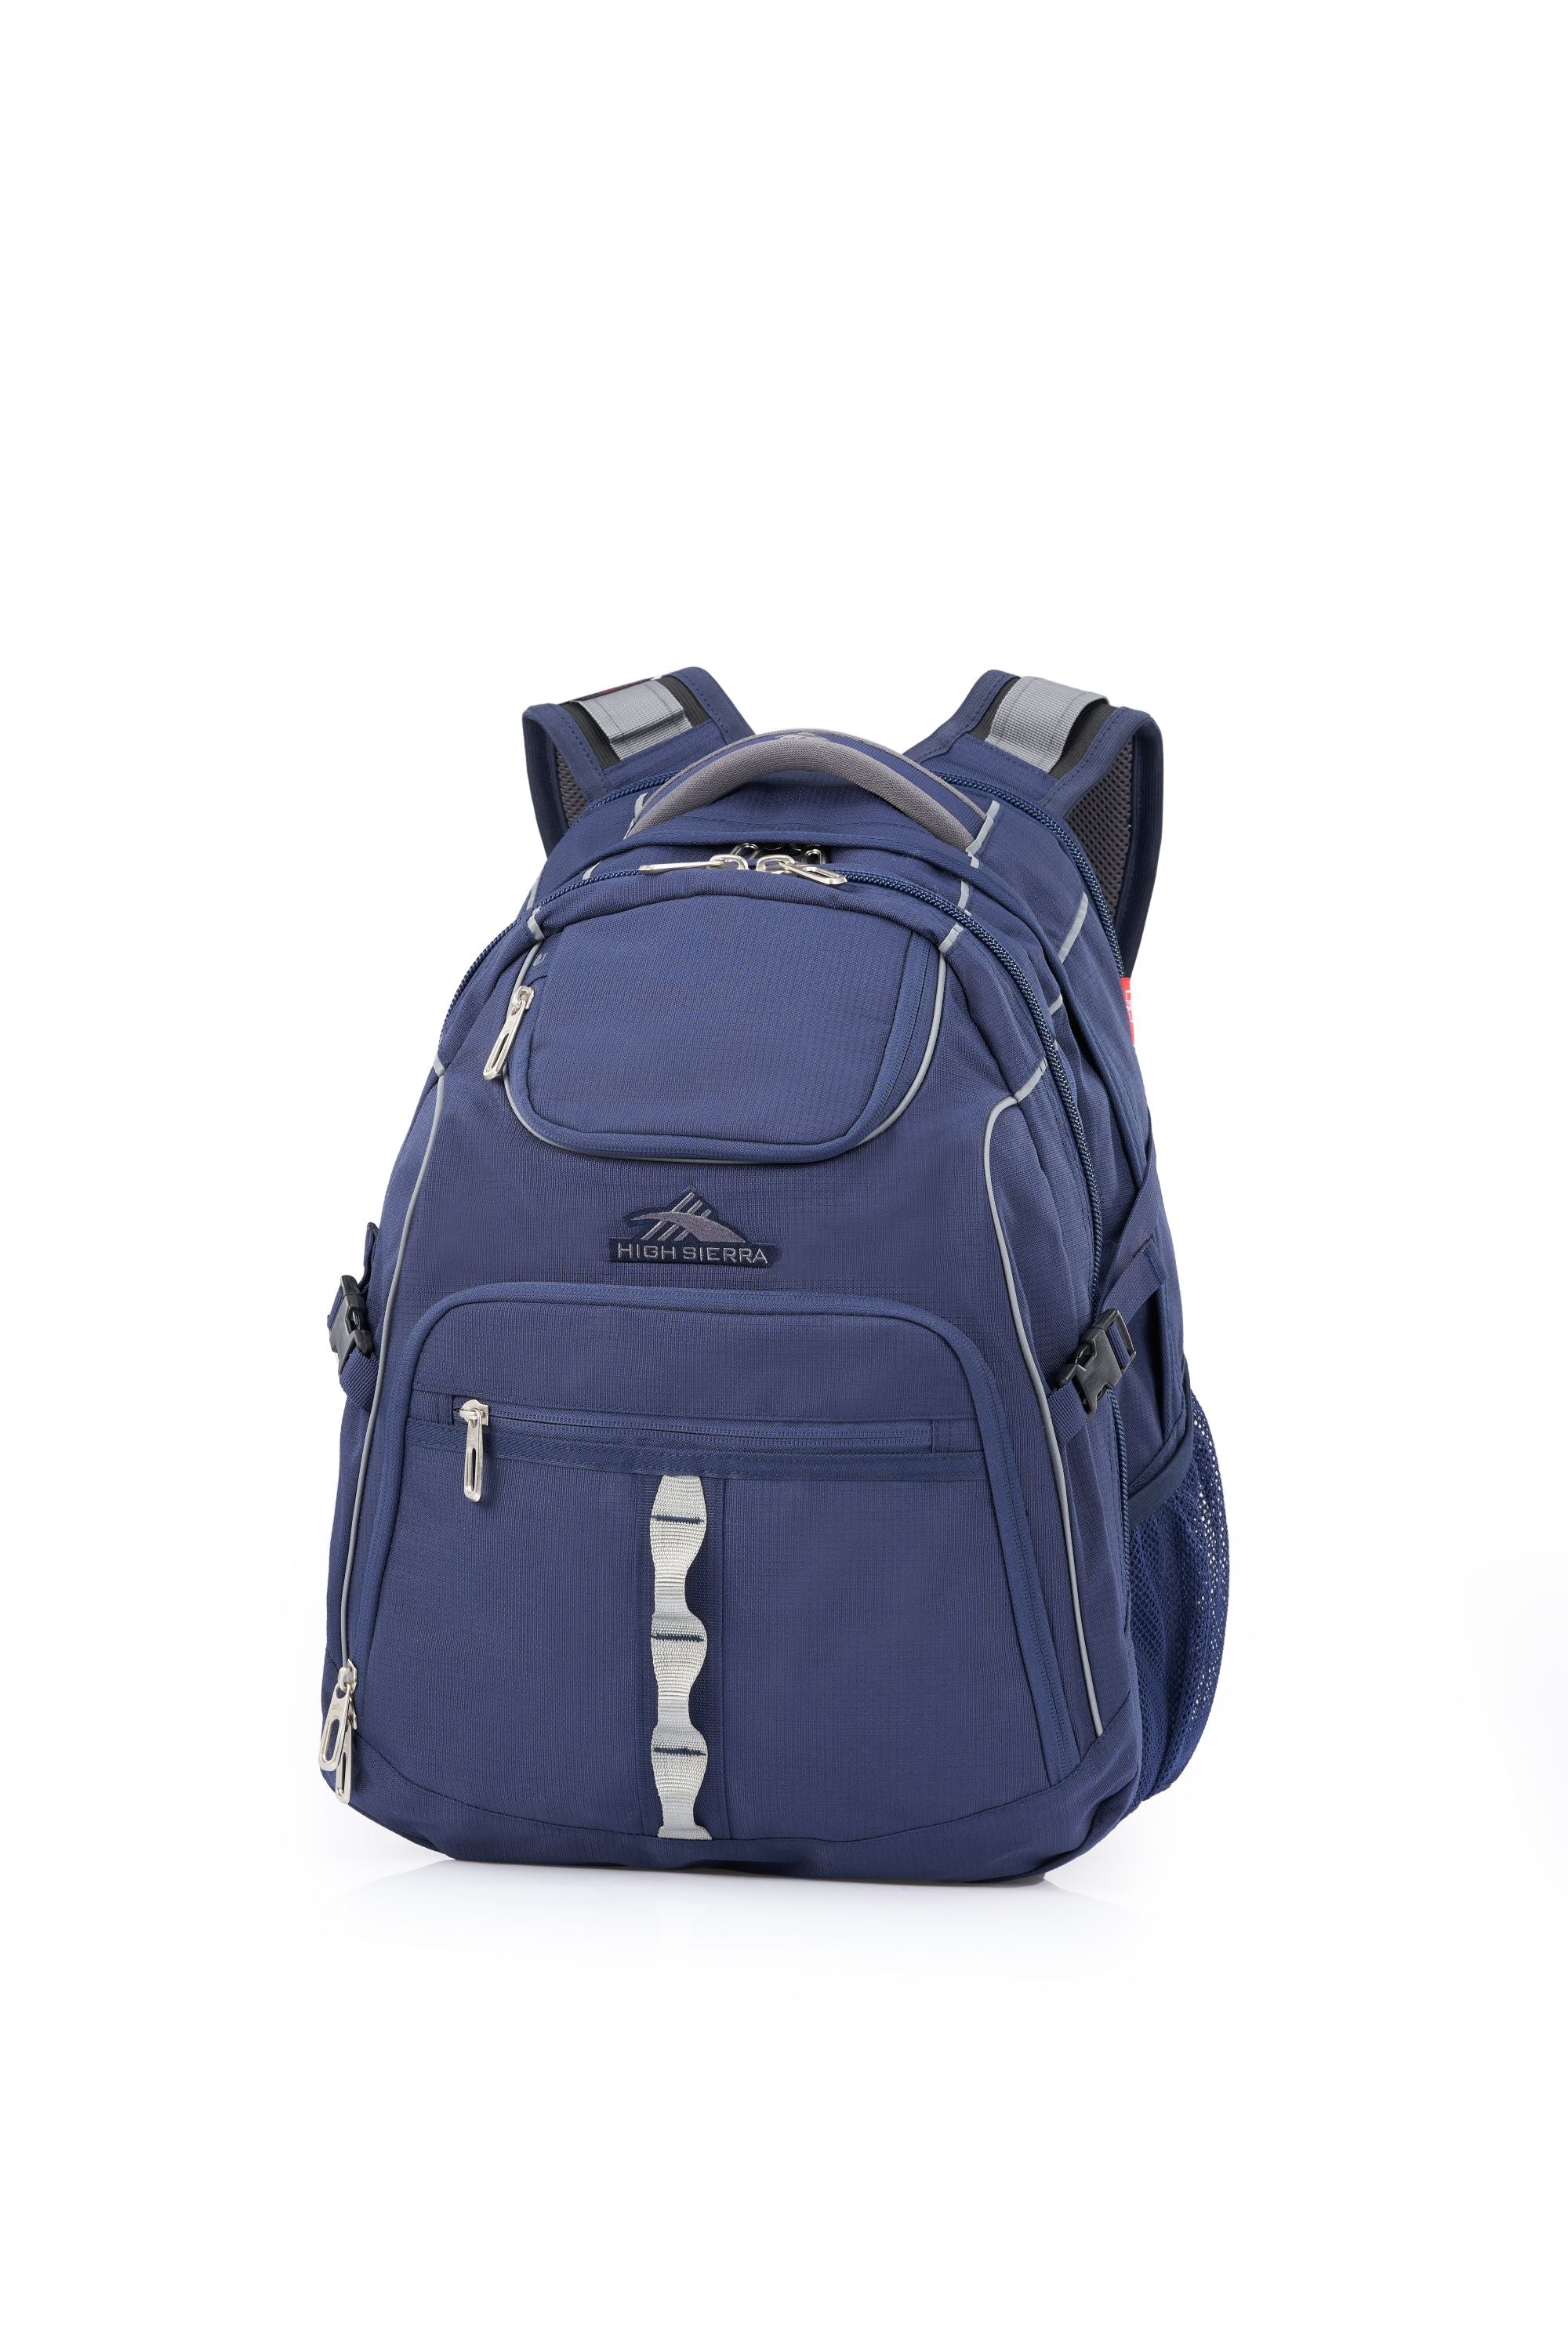 High Sierra - Access 3.0 Eco Backpack - Marine Blue